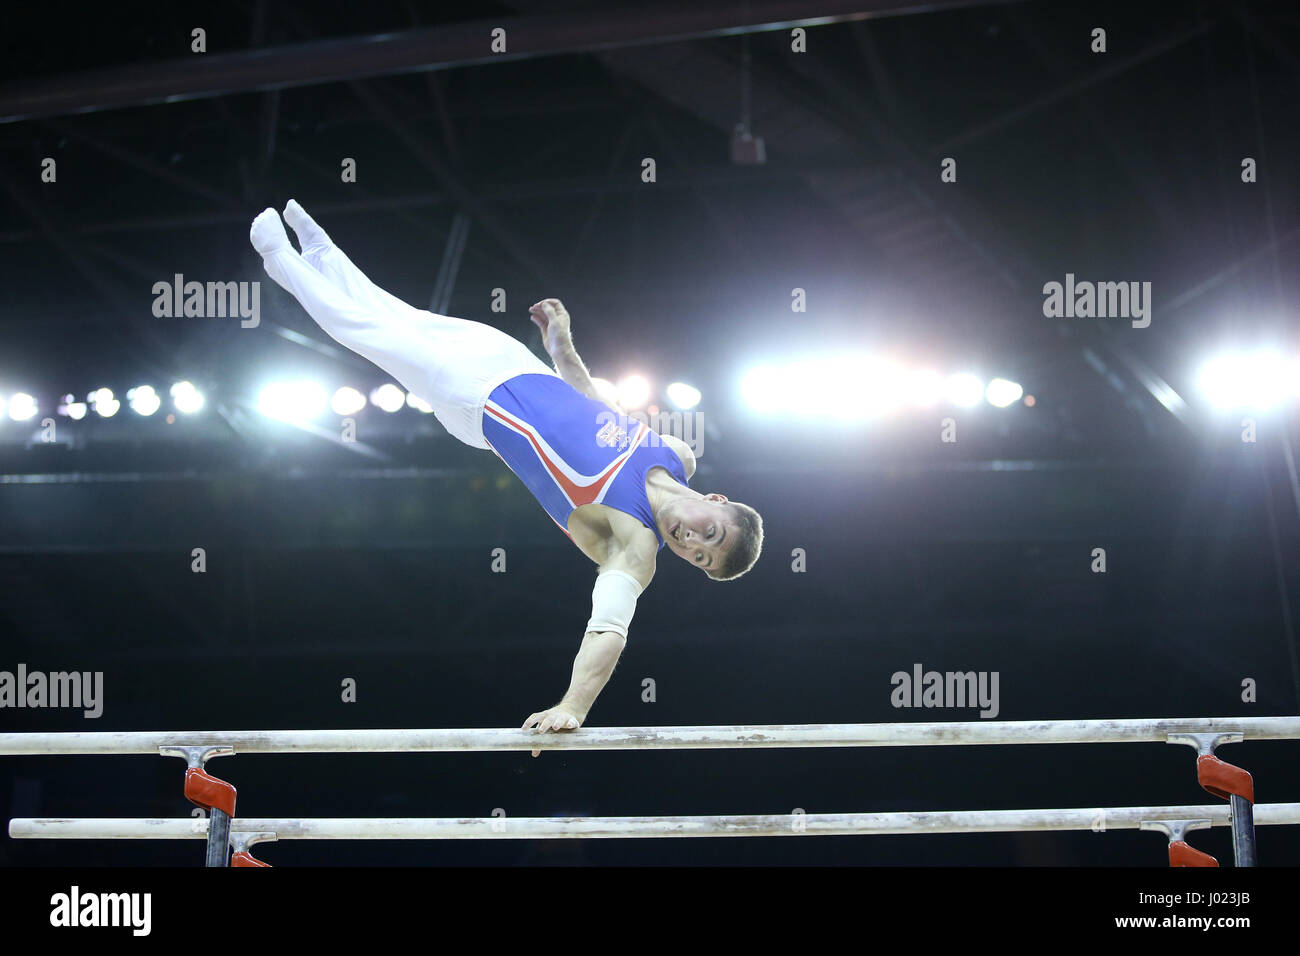 Der Brite Sam Oldham konkurriert am Barren während der World Cup Gymnastik in The O2, London. Stockfoto